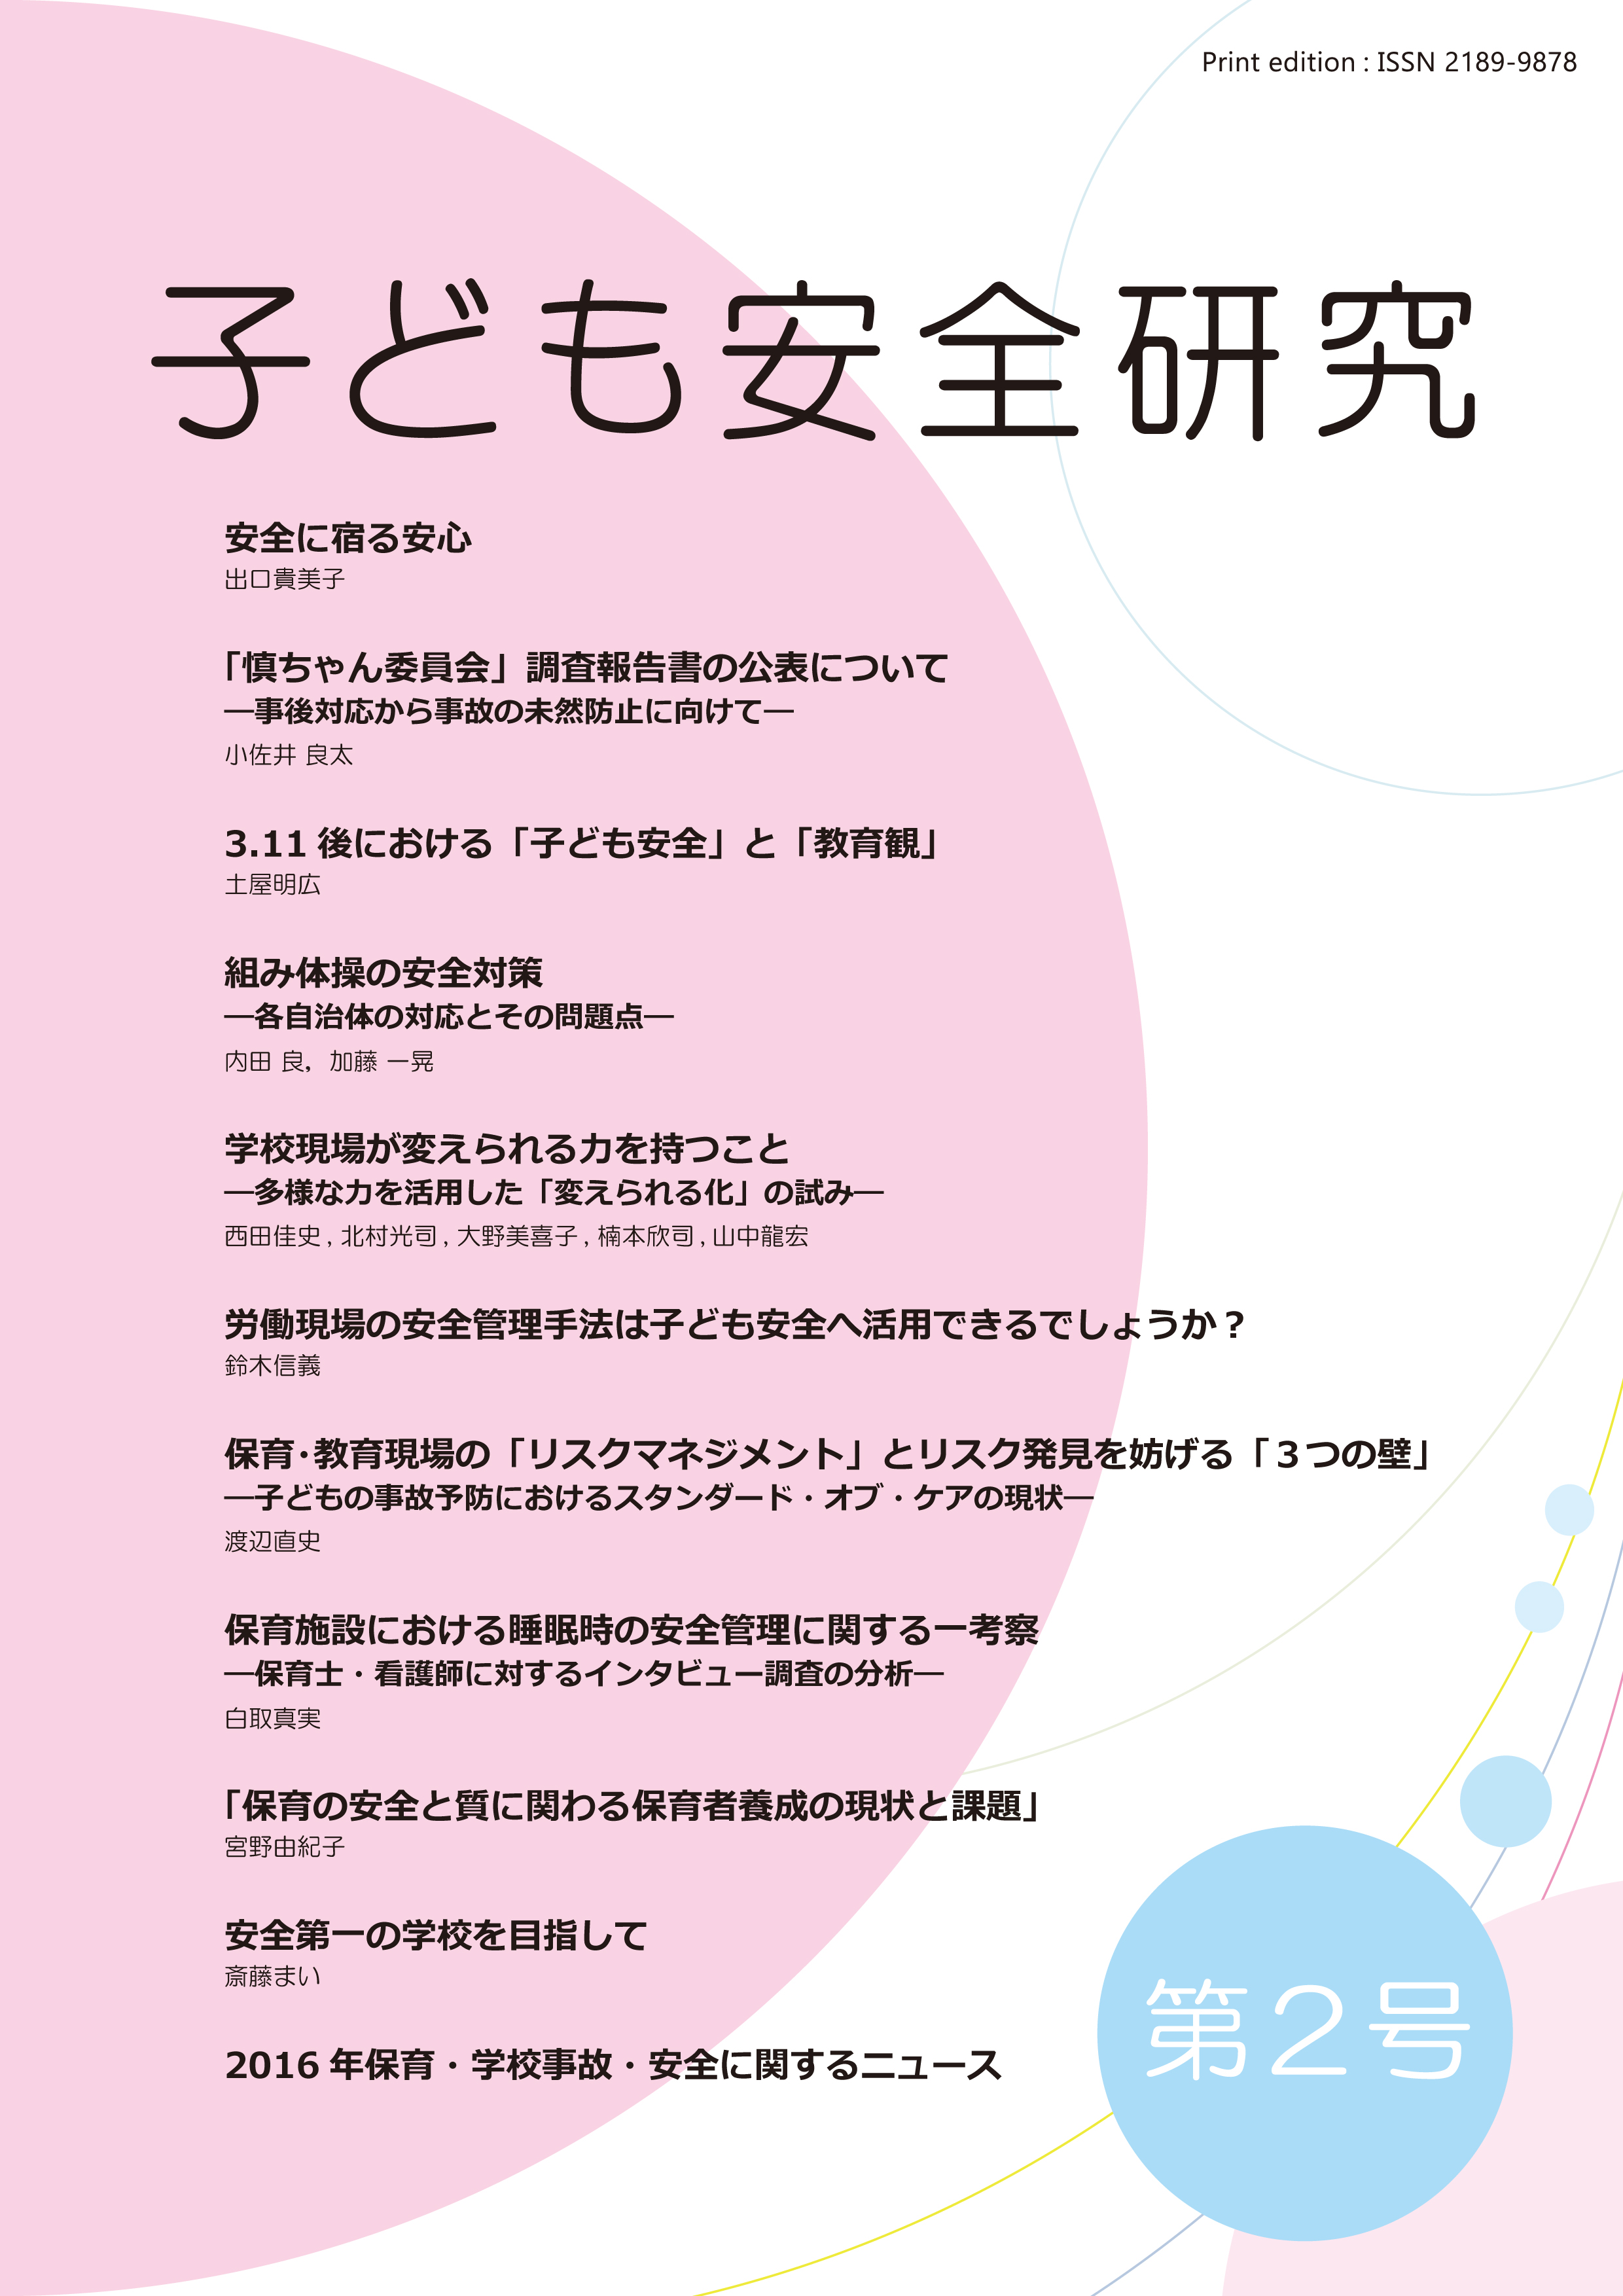 機関誌 子ども安全研究 第2号を発行しました 一般社団法人吉川慎之介記念基金